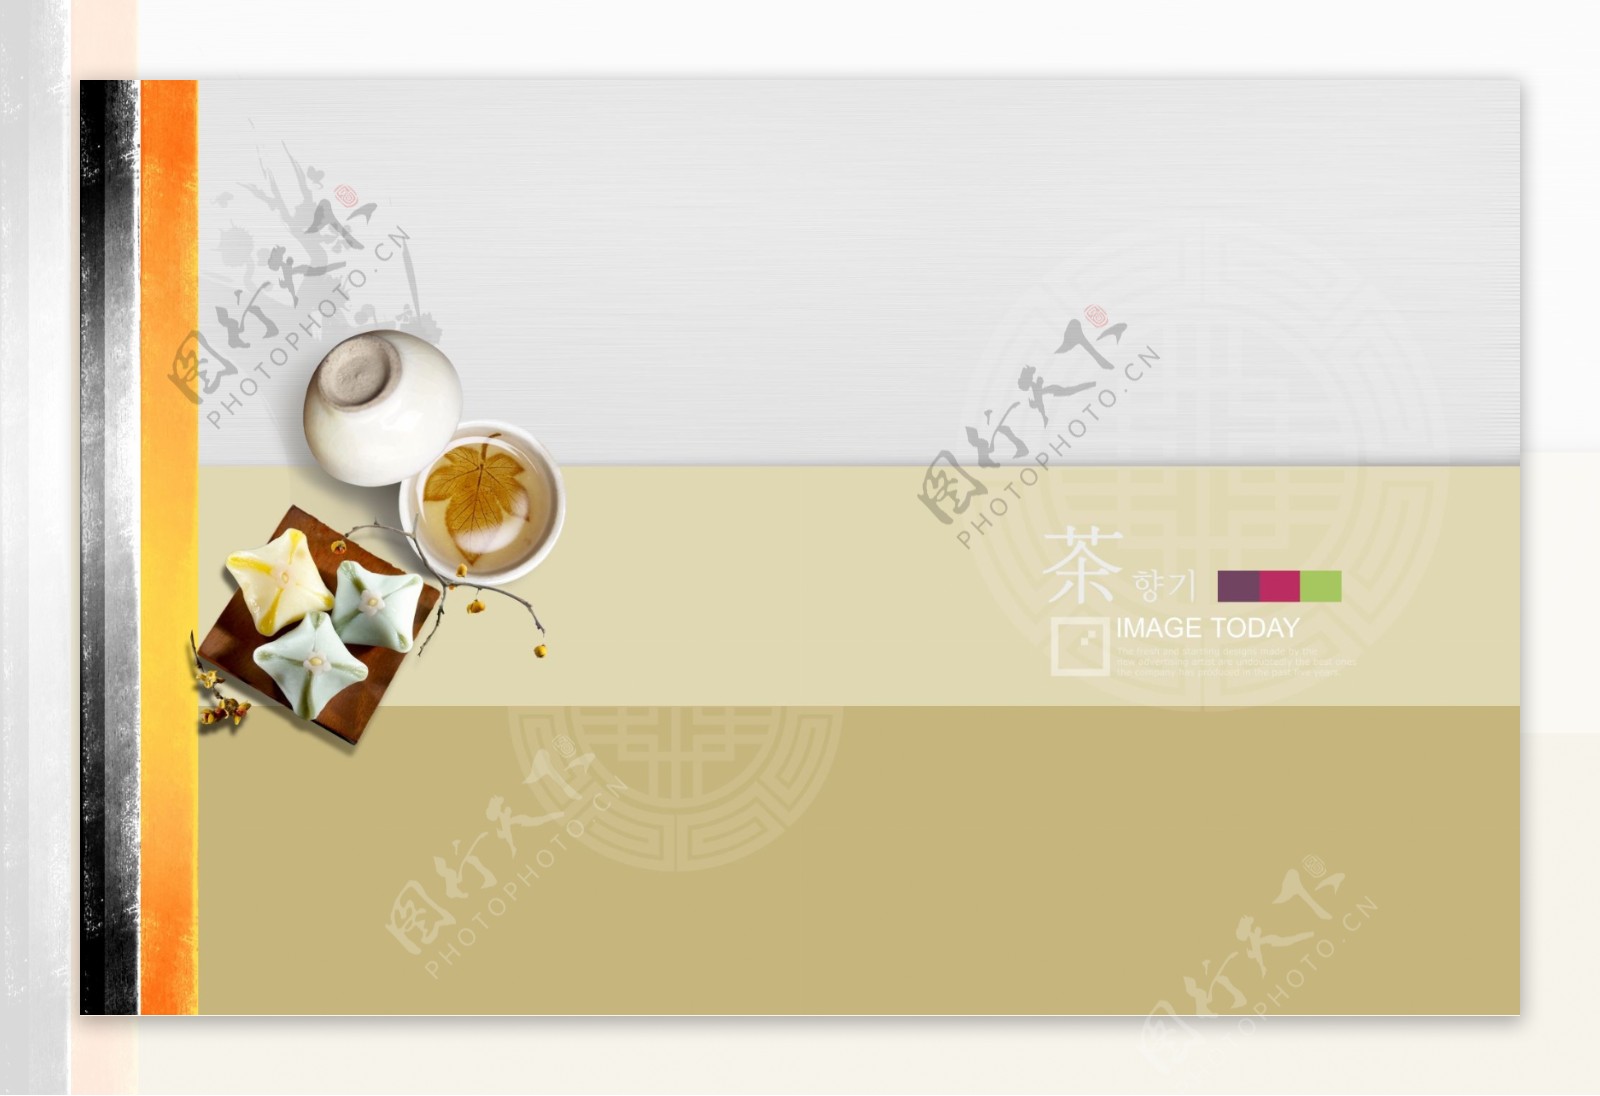 圆形传统纹样与茶文化主题PSD分层素材